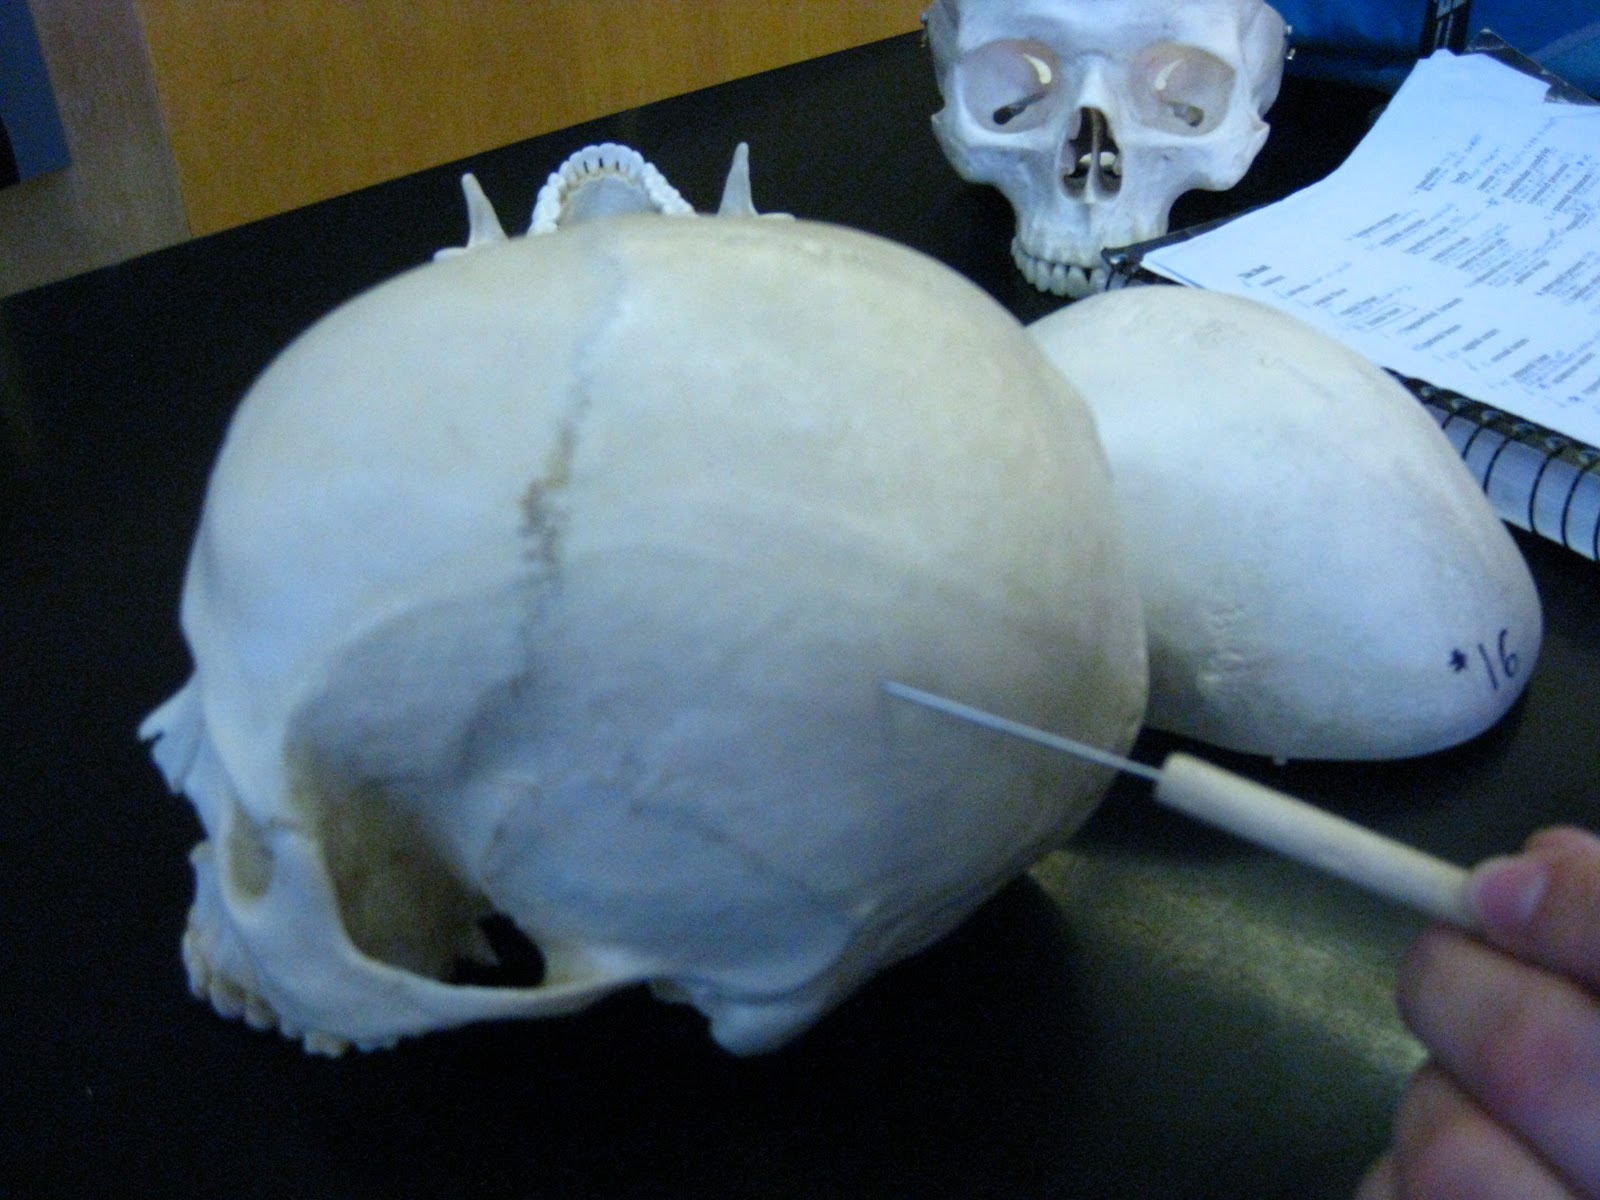 Boned: Human Skull - parietal bones (calvarial bones # 2 and # 3)